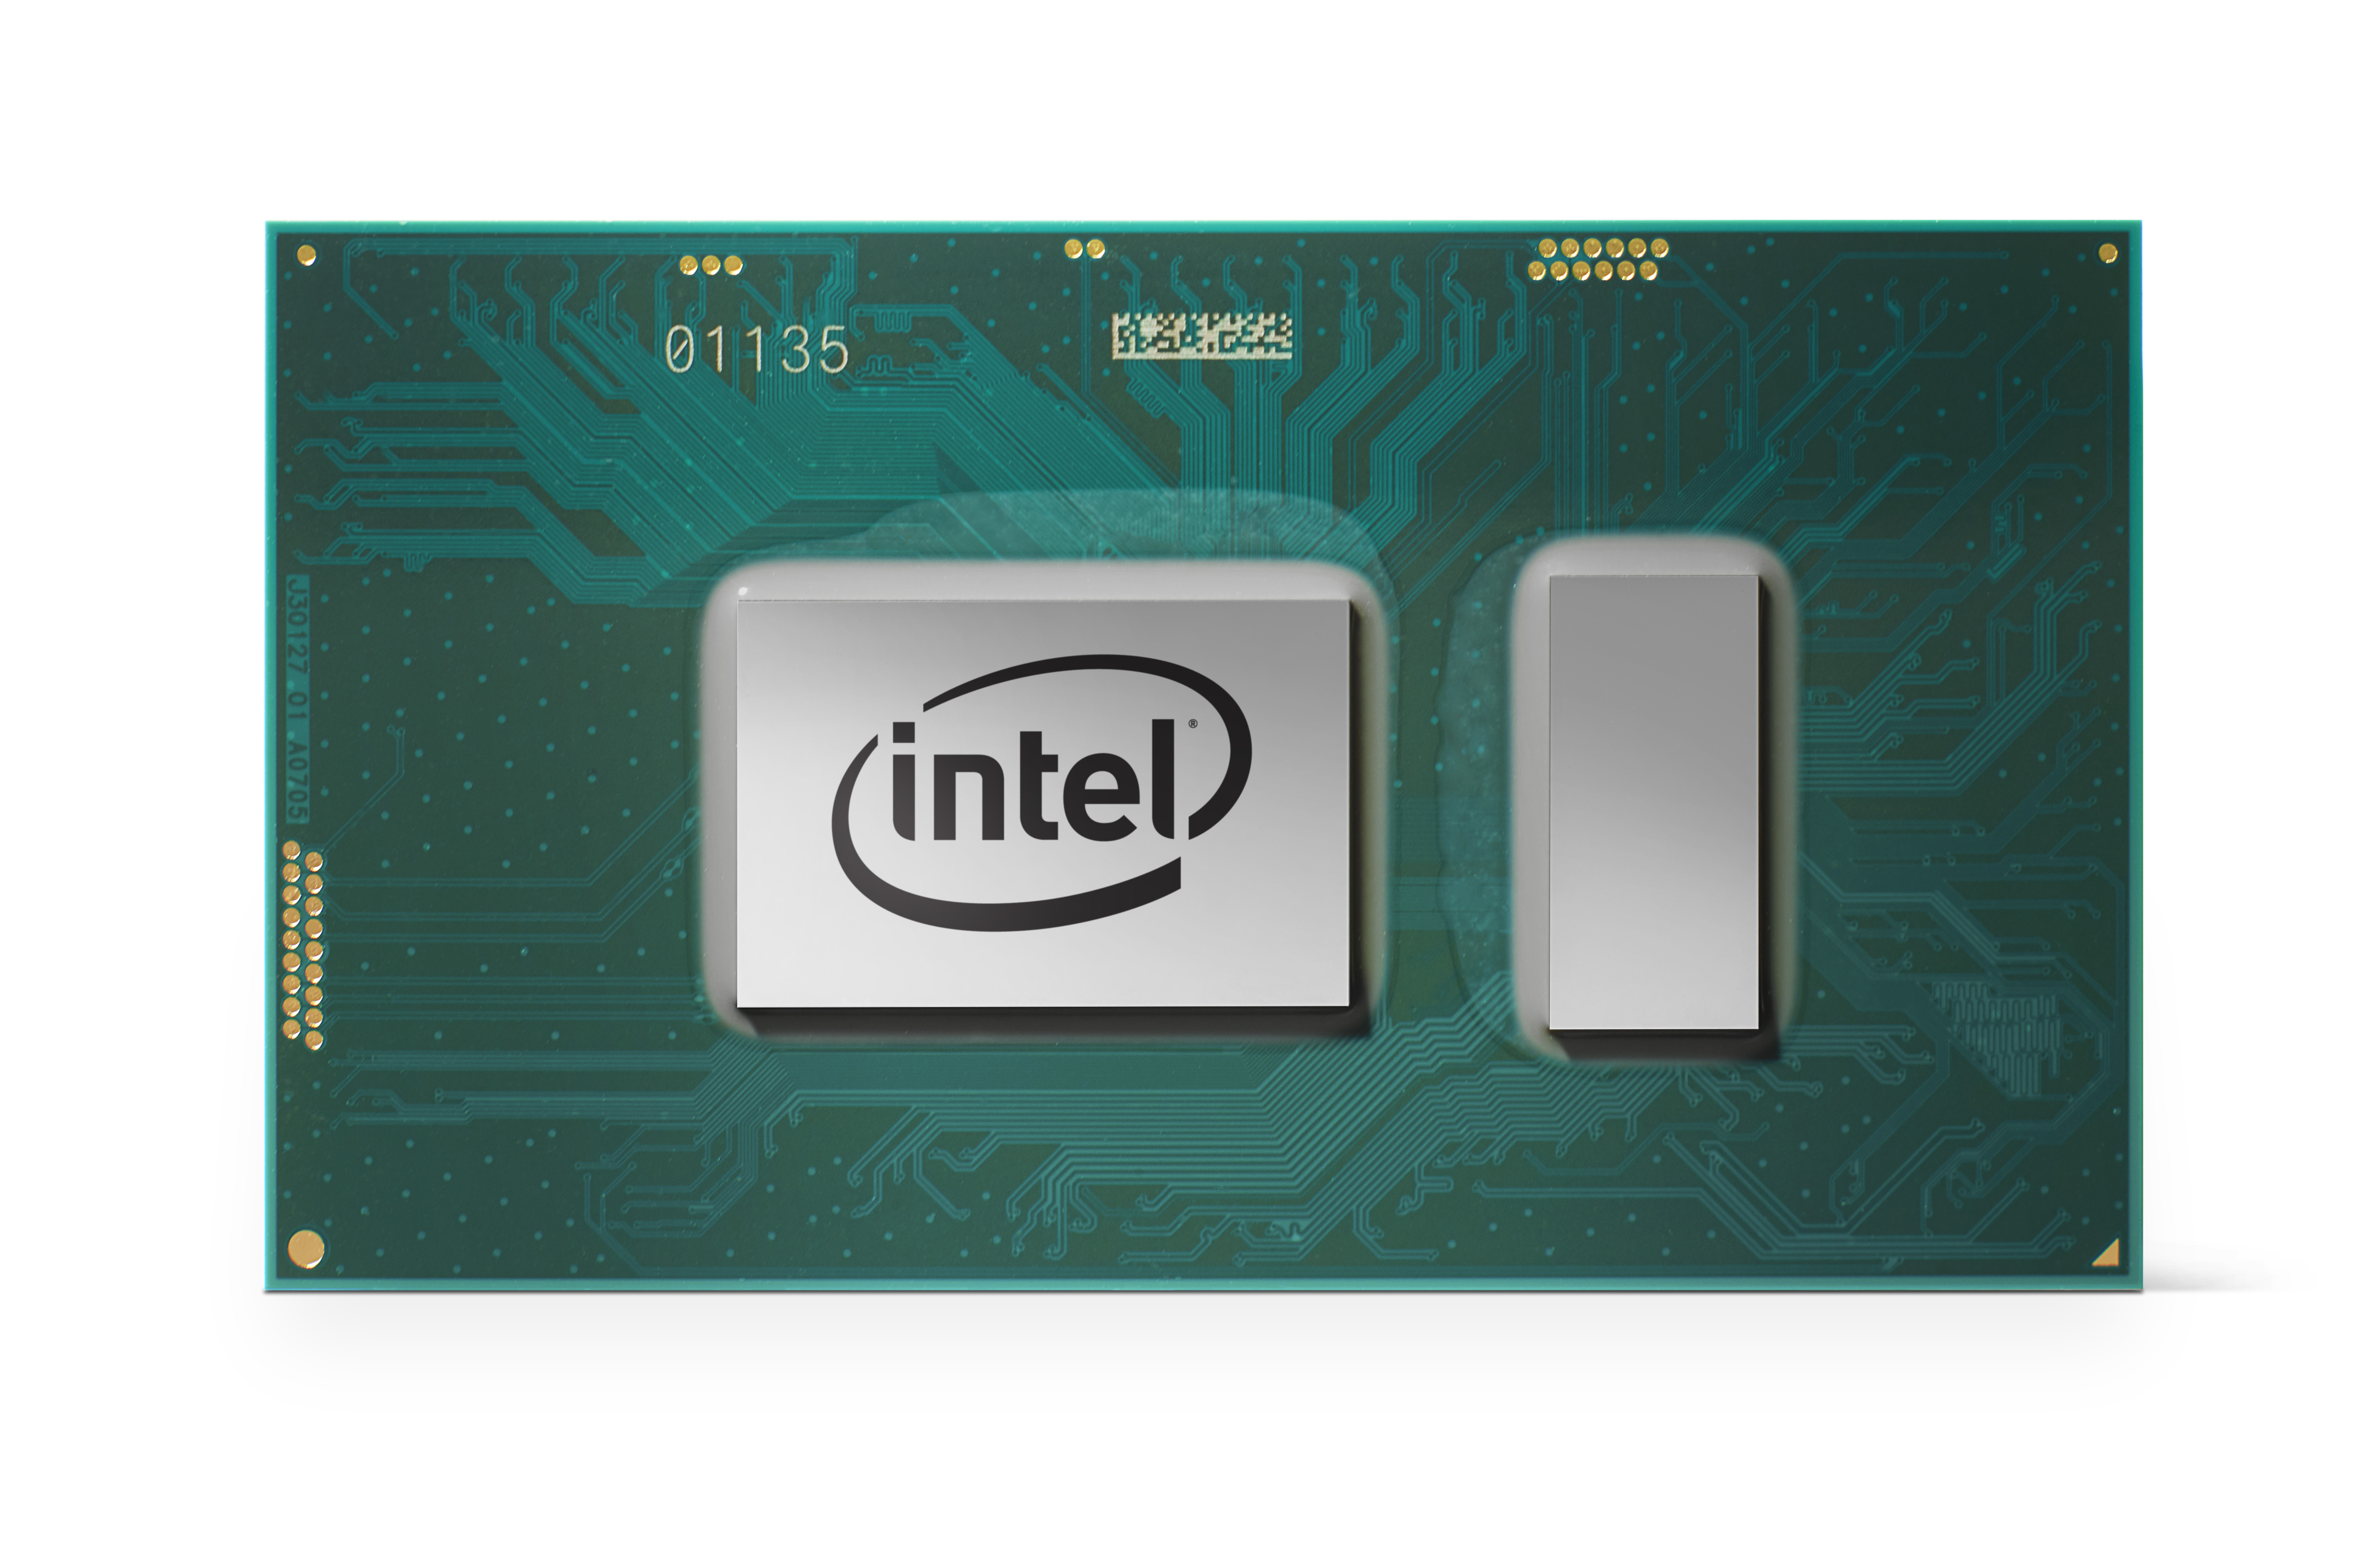 Immagine pubblicata in relazione al seguente contenuto: Intel annuncia i processori Core di ottava generazione (aka Coffee Lake) | Nome immagine: news26886_Intel-Core-Ottava-Generazione-Coffee-Lake_4.jpg